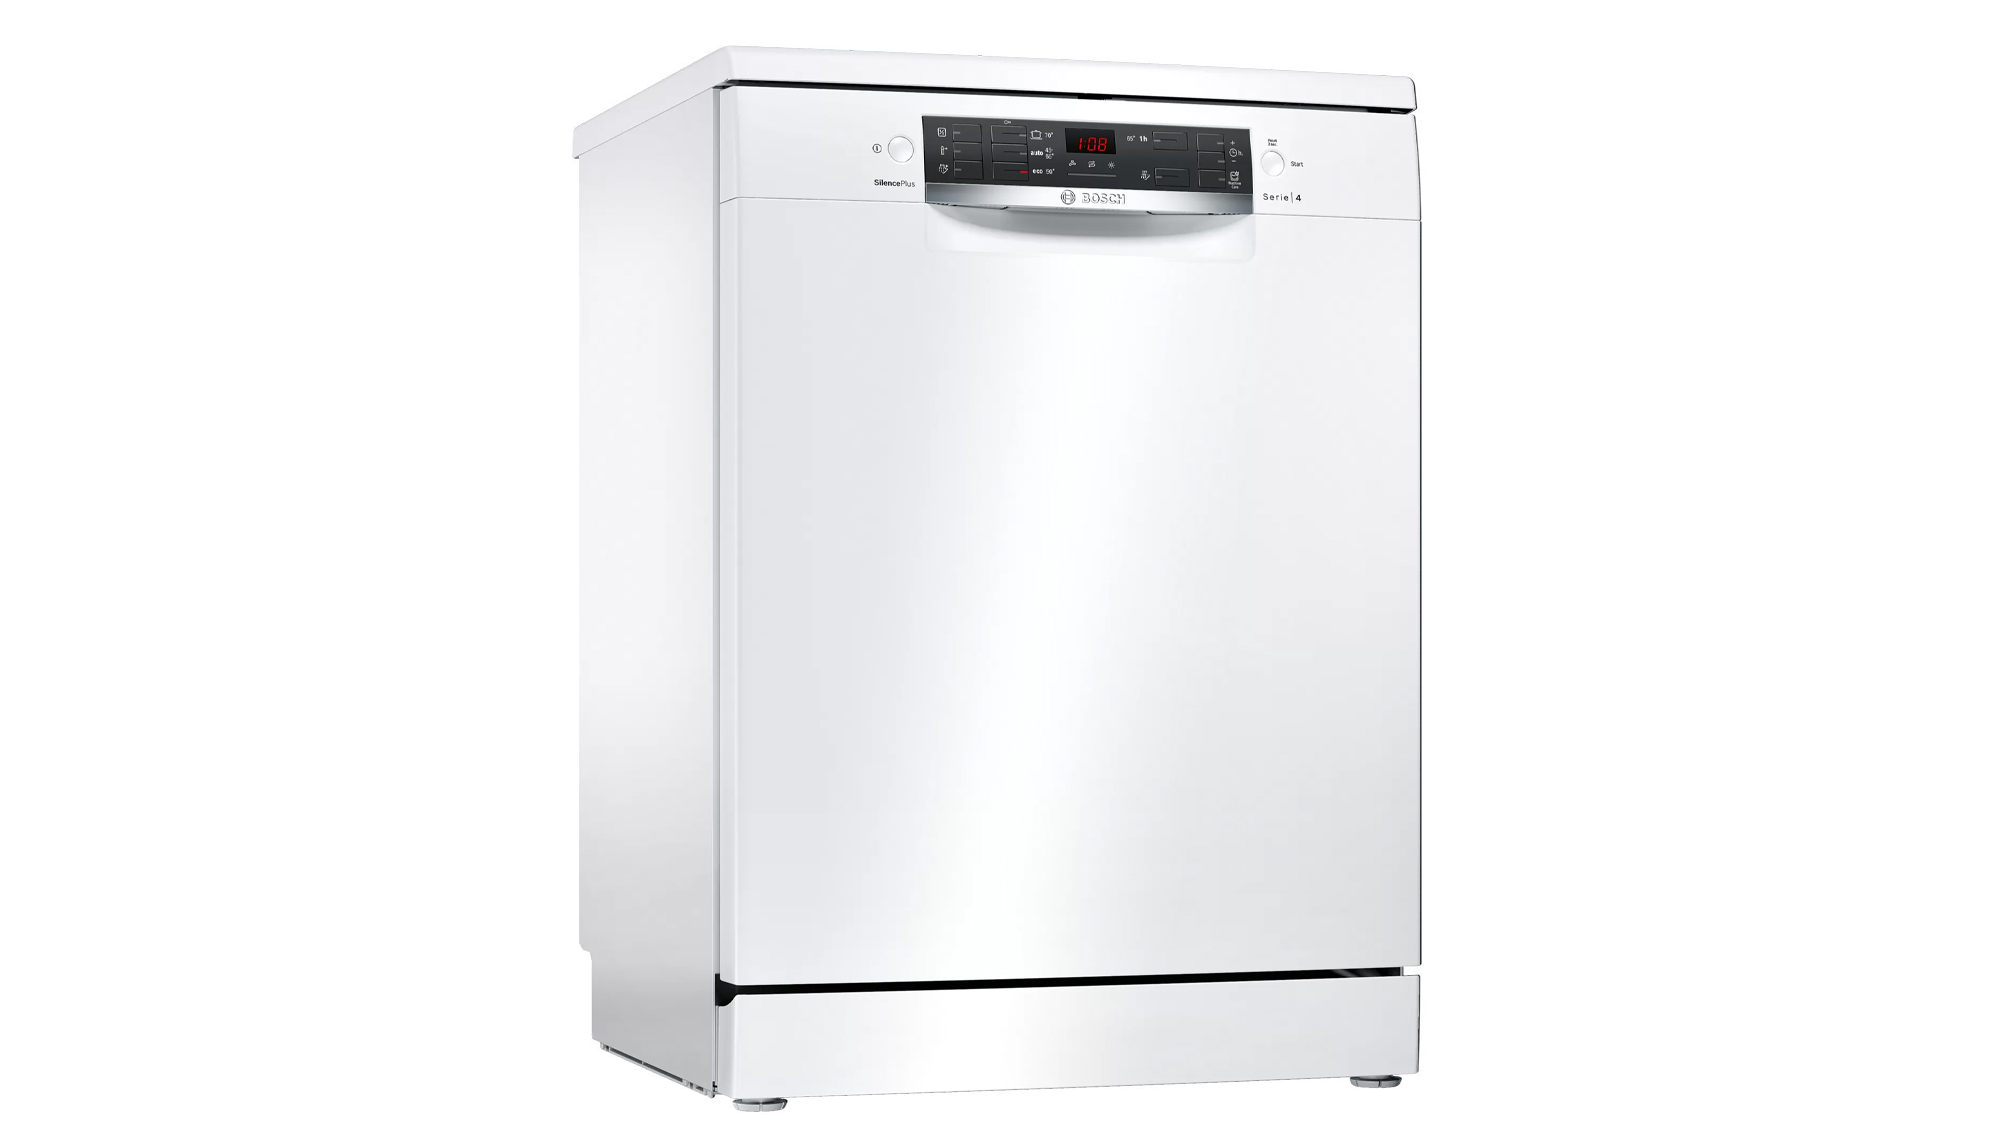 ماشین ظرفشویی بوش 12 نفره سری 4 مدل SMS45DW10Q